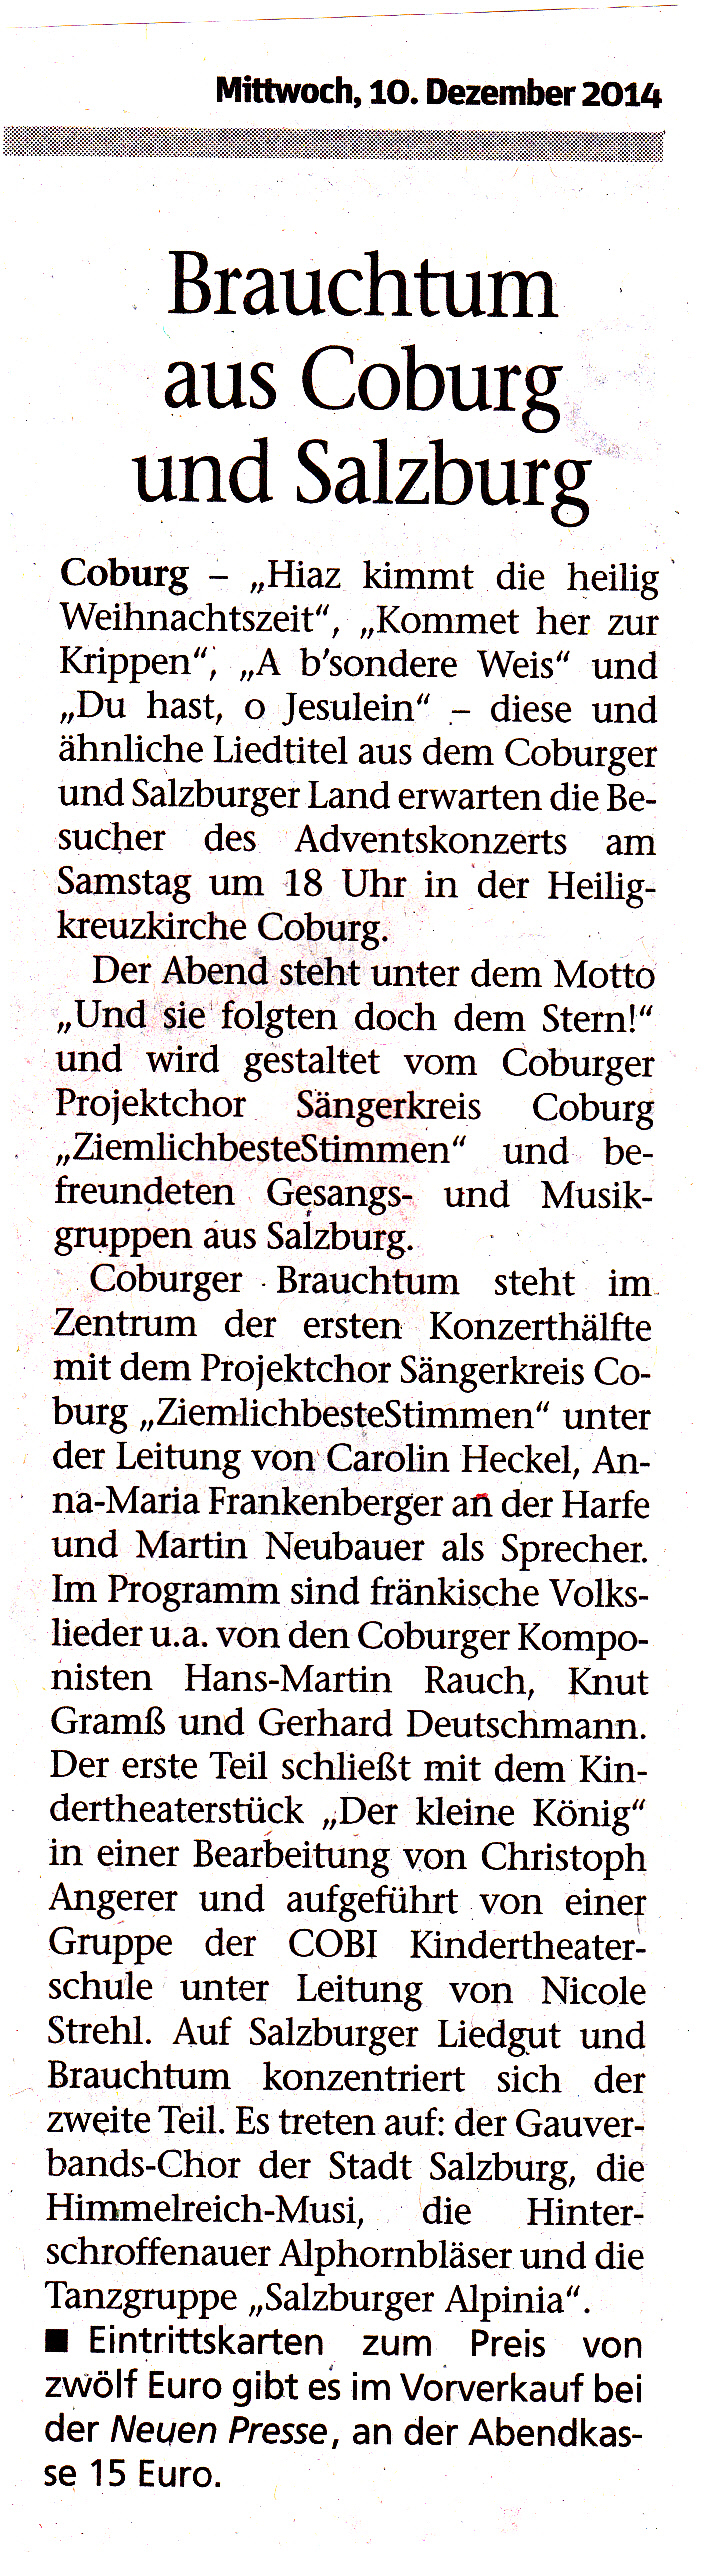 Kulturaustausch Coburg Salzburg am 13.12.2014